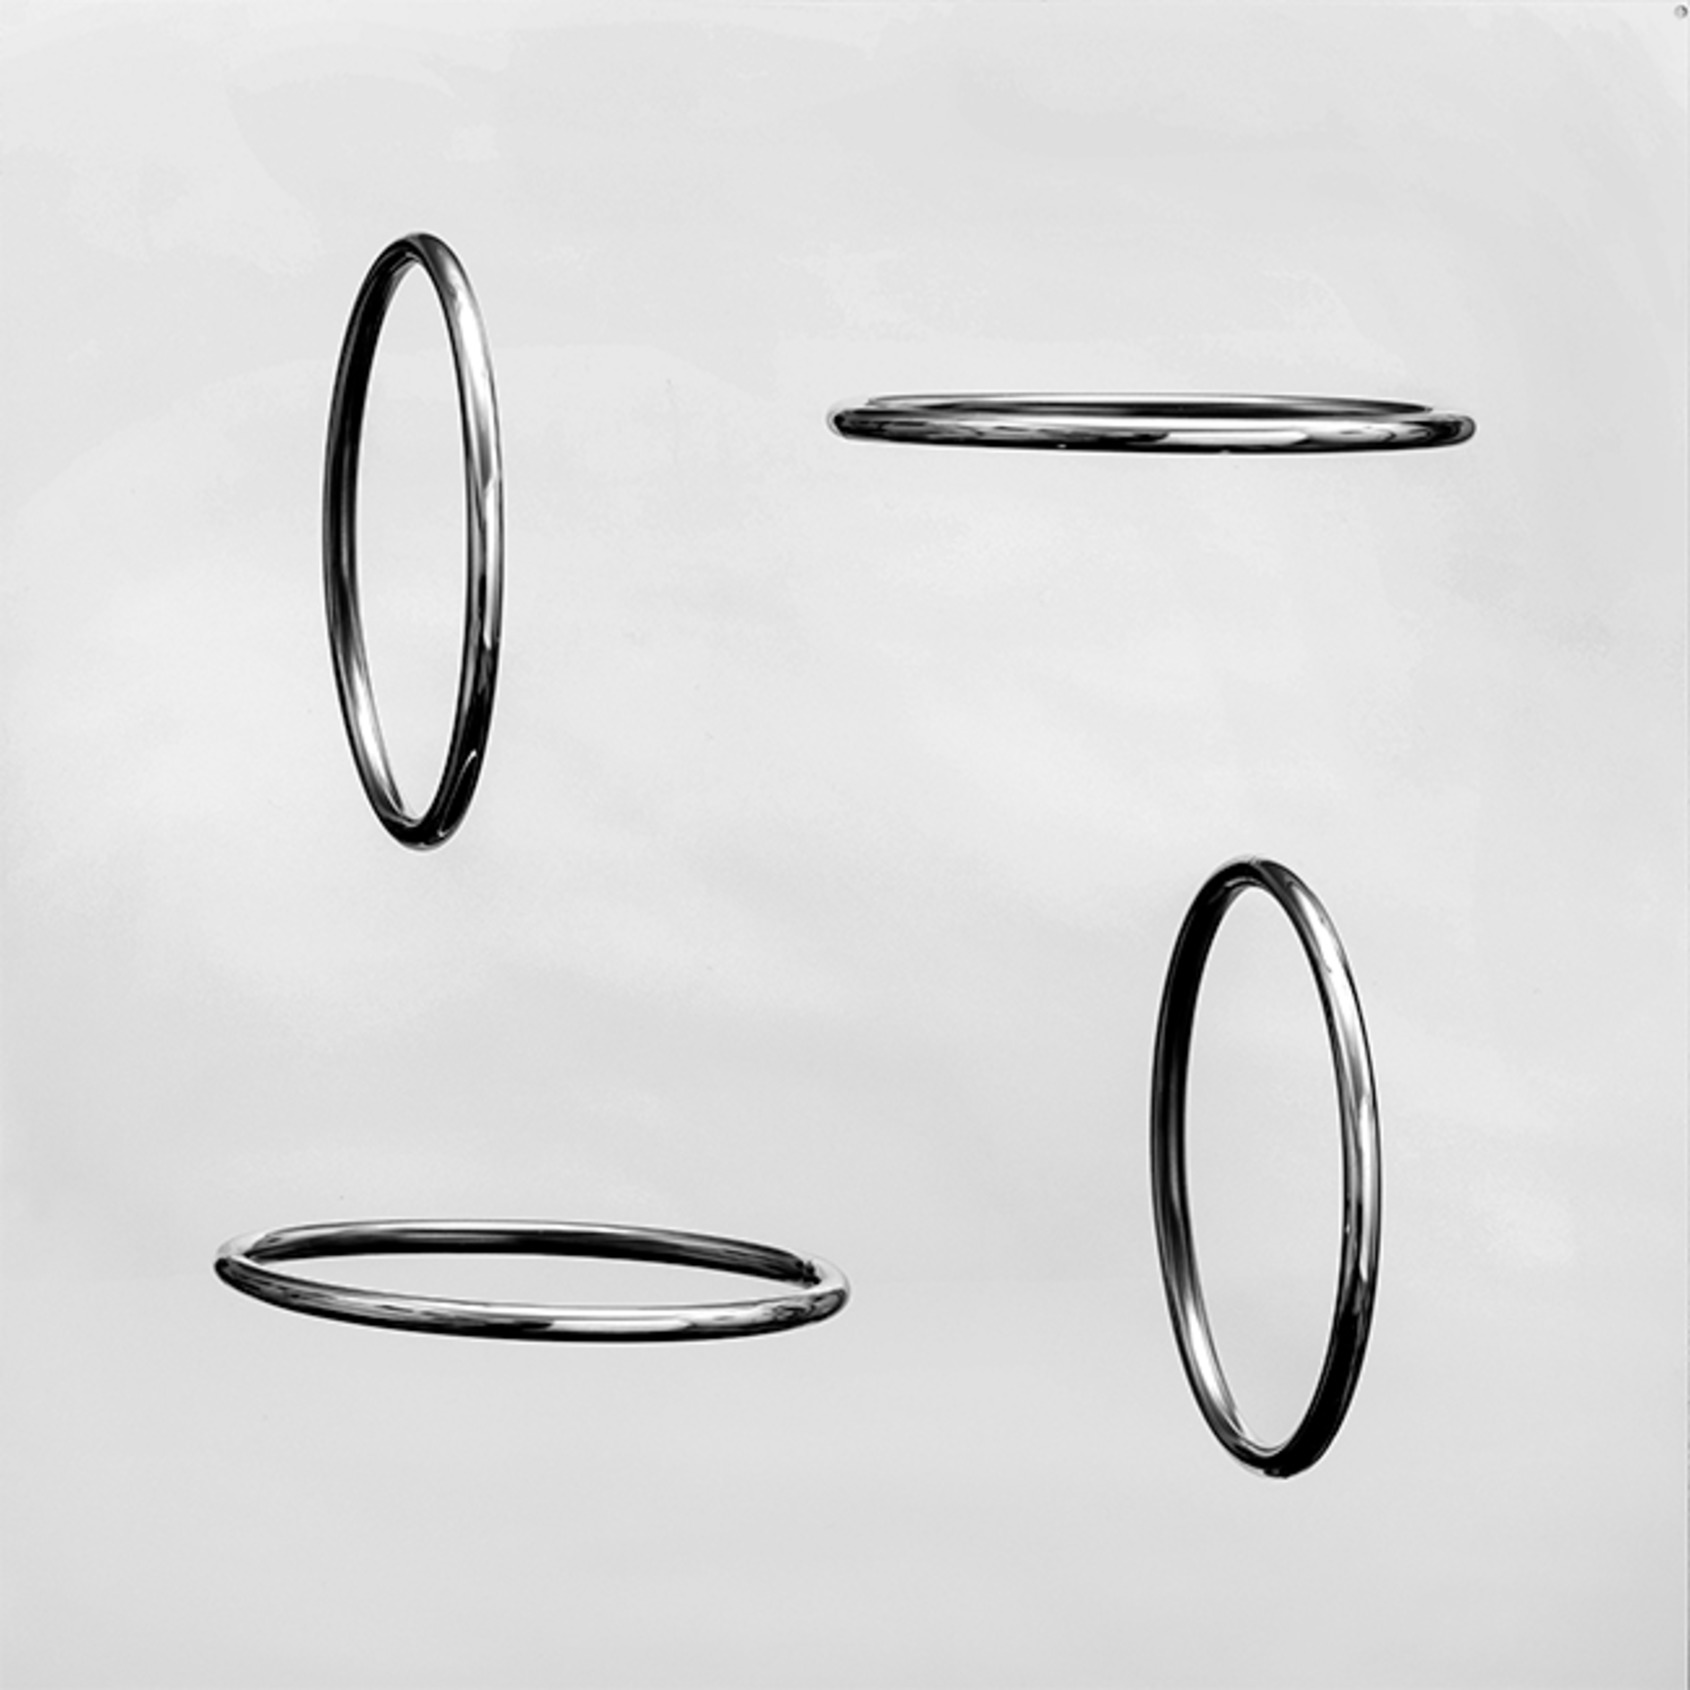 cerchi virtuali ortogonali steel. 1967-68 50x50x10 cm © Centro Studi e Ricerche Getulio Alviani 